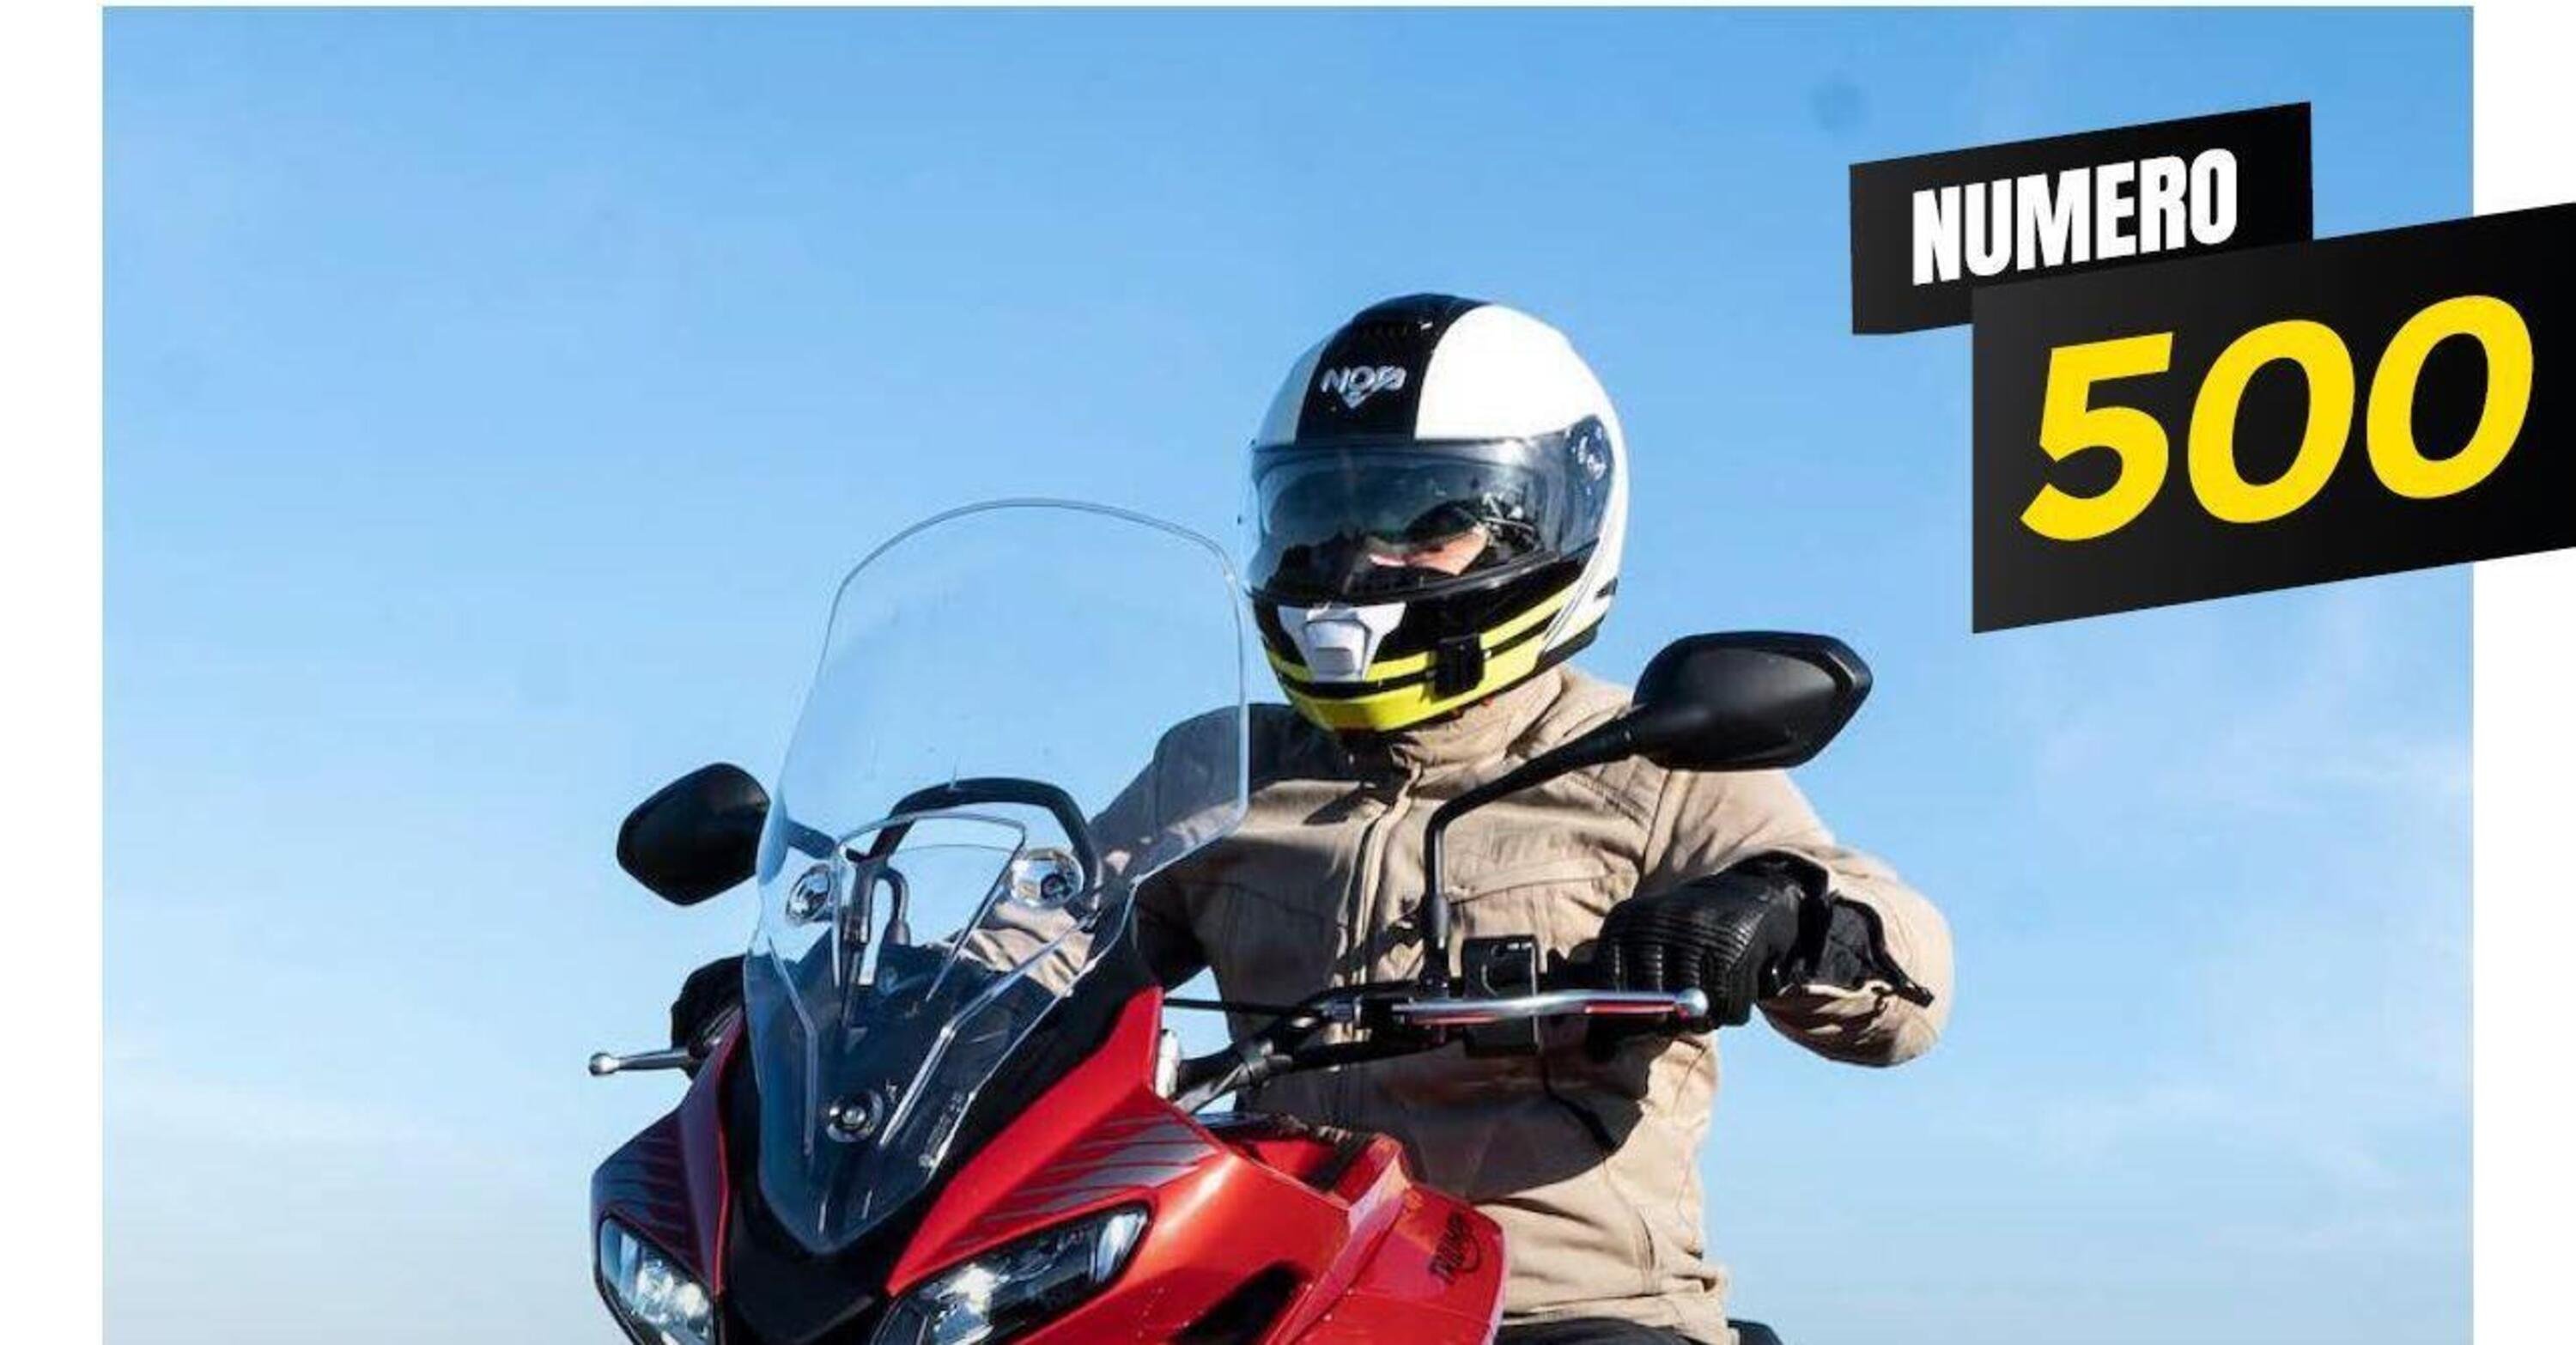 Magazine n&deg; 500: scarica e leggi il meglio di Moto.it